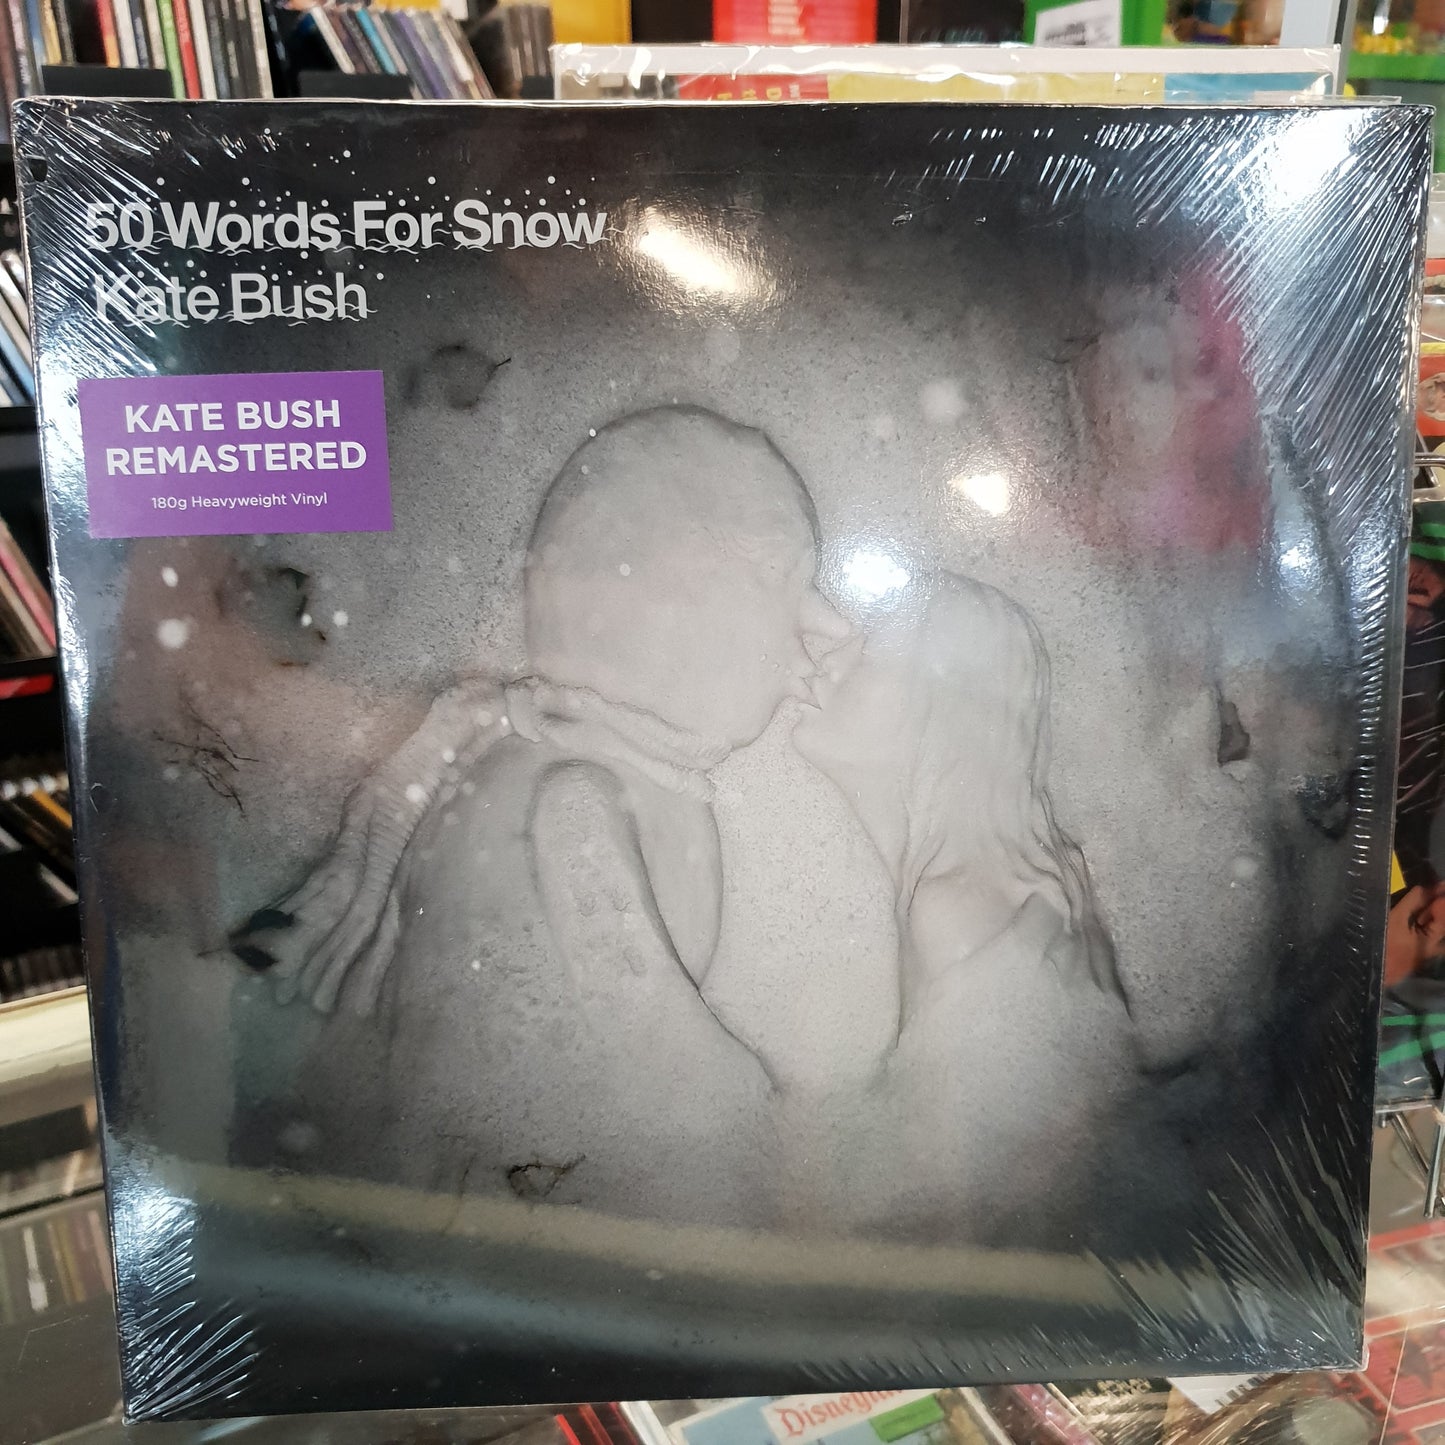 NEW - Kate Bush, 50 Words for Snow Vinyl